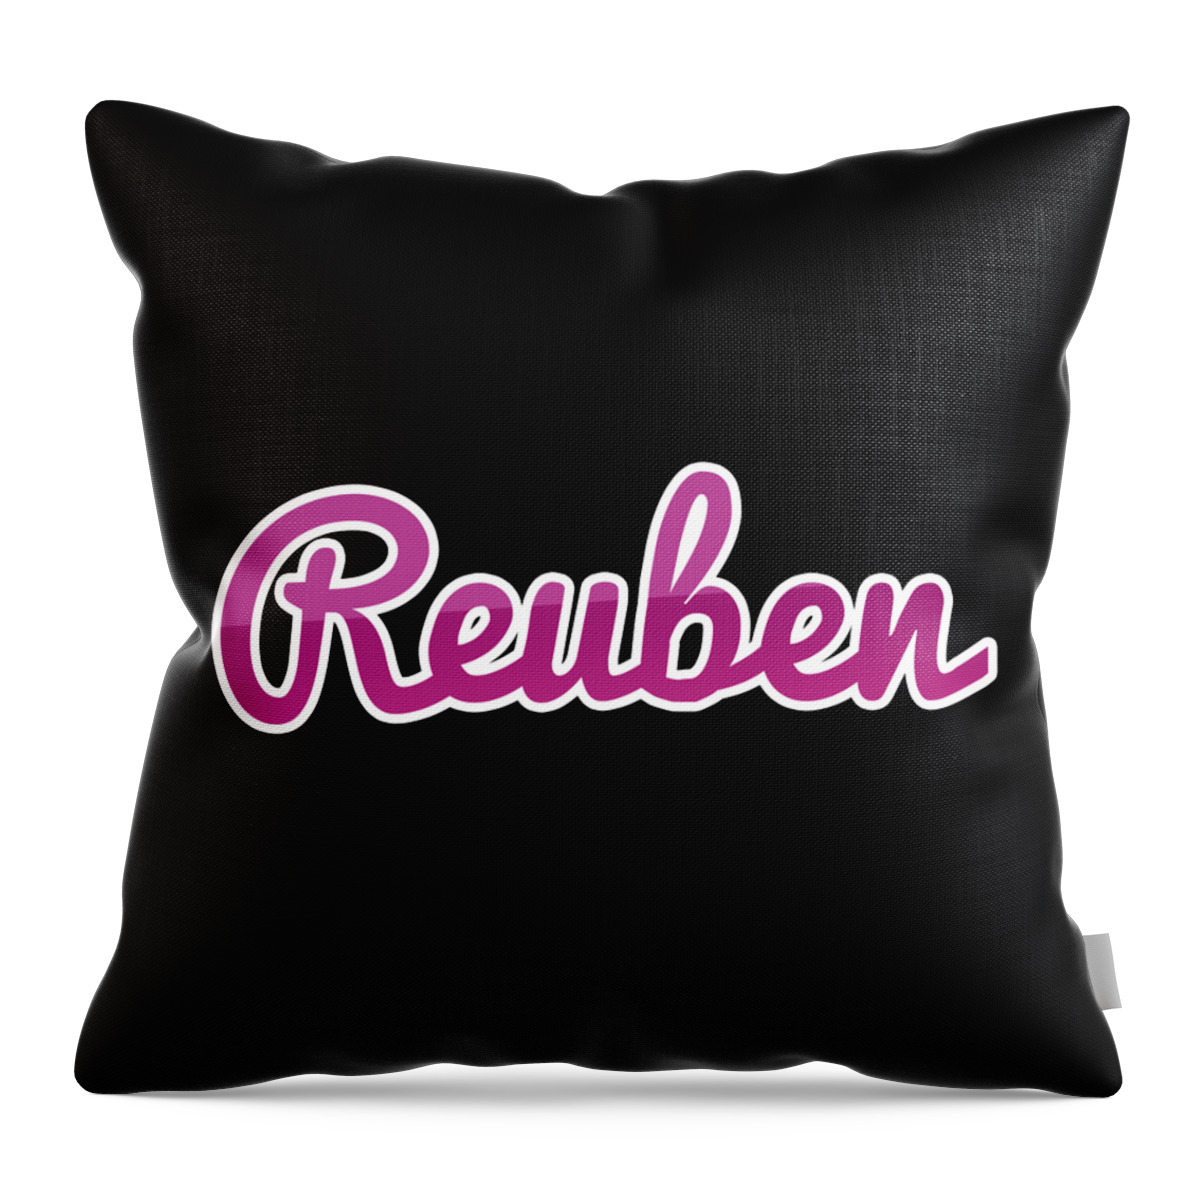 Reuben Throw Pillow featuring the digital art Reuben #Reuben by TintoDesigns